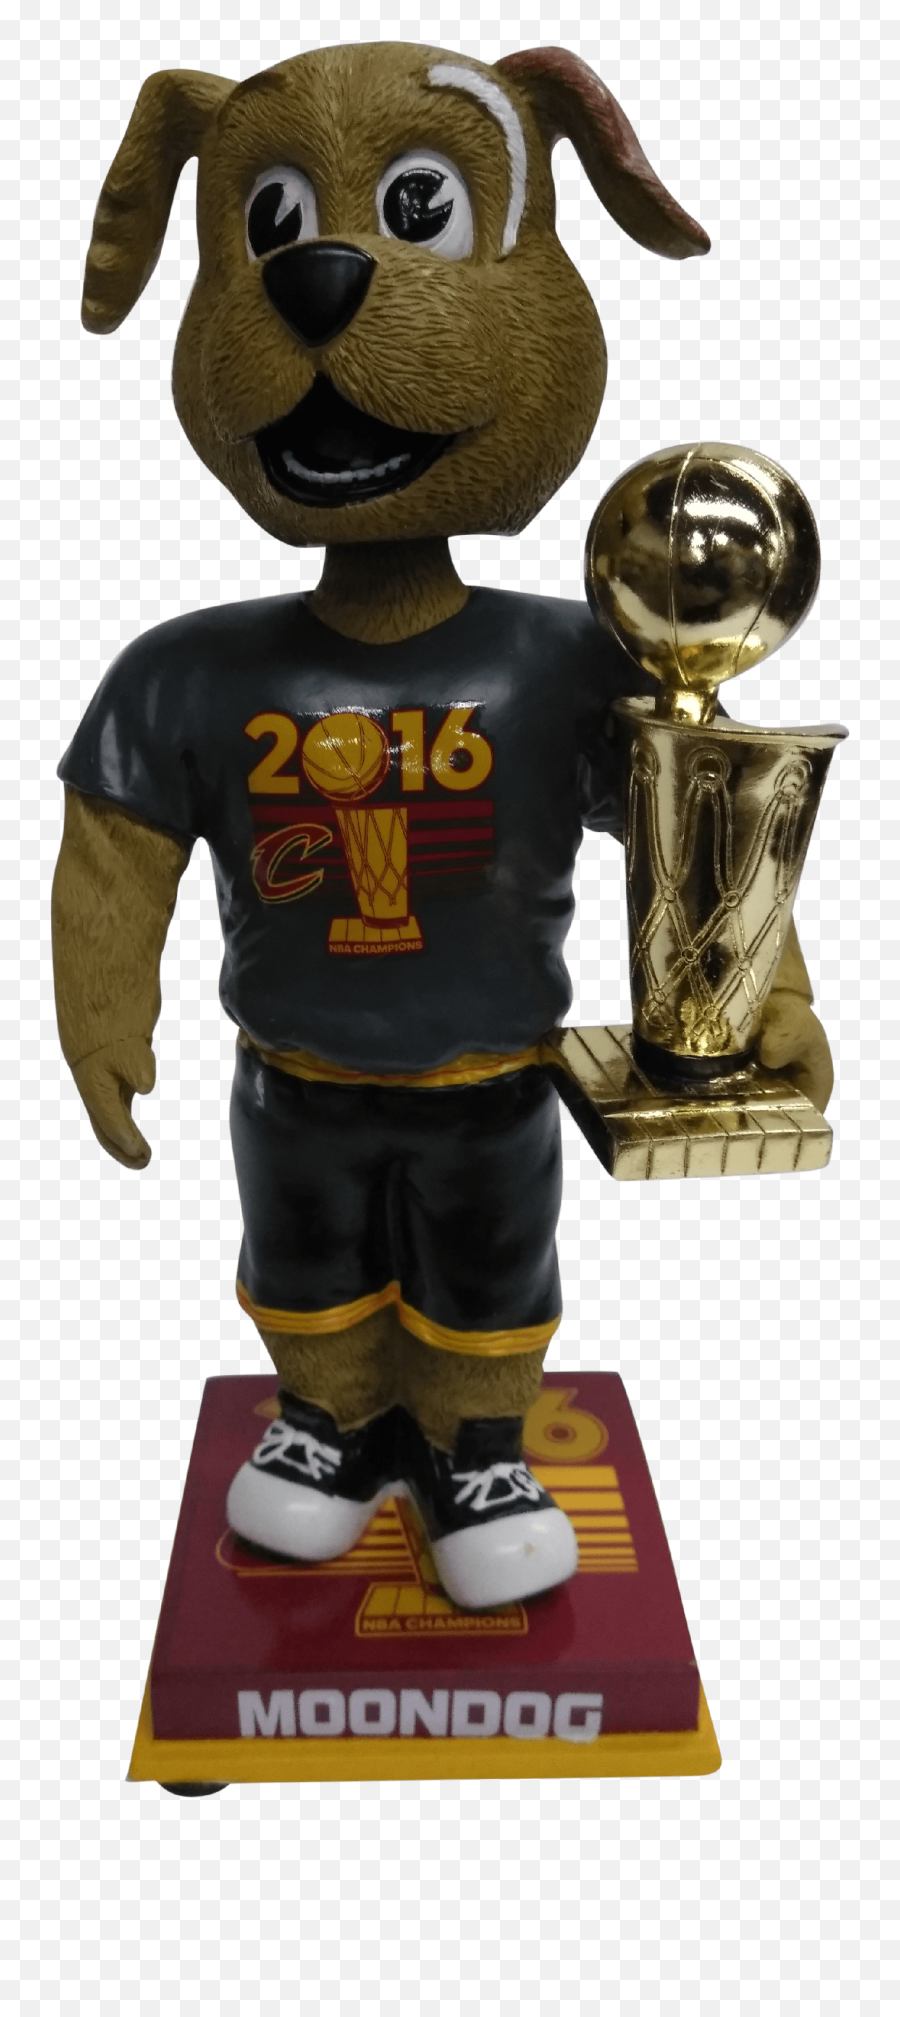 Moondog Cleveland Cavs 2016 Nba Champions T - Shirt Bobblehead 216 Emoji,Nba Finals Trophy Png